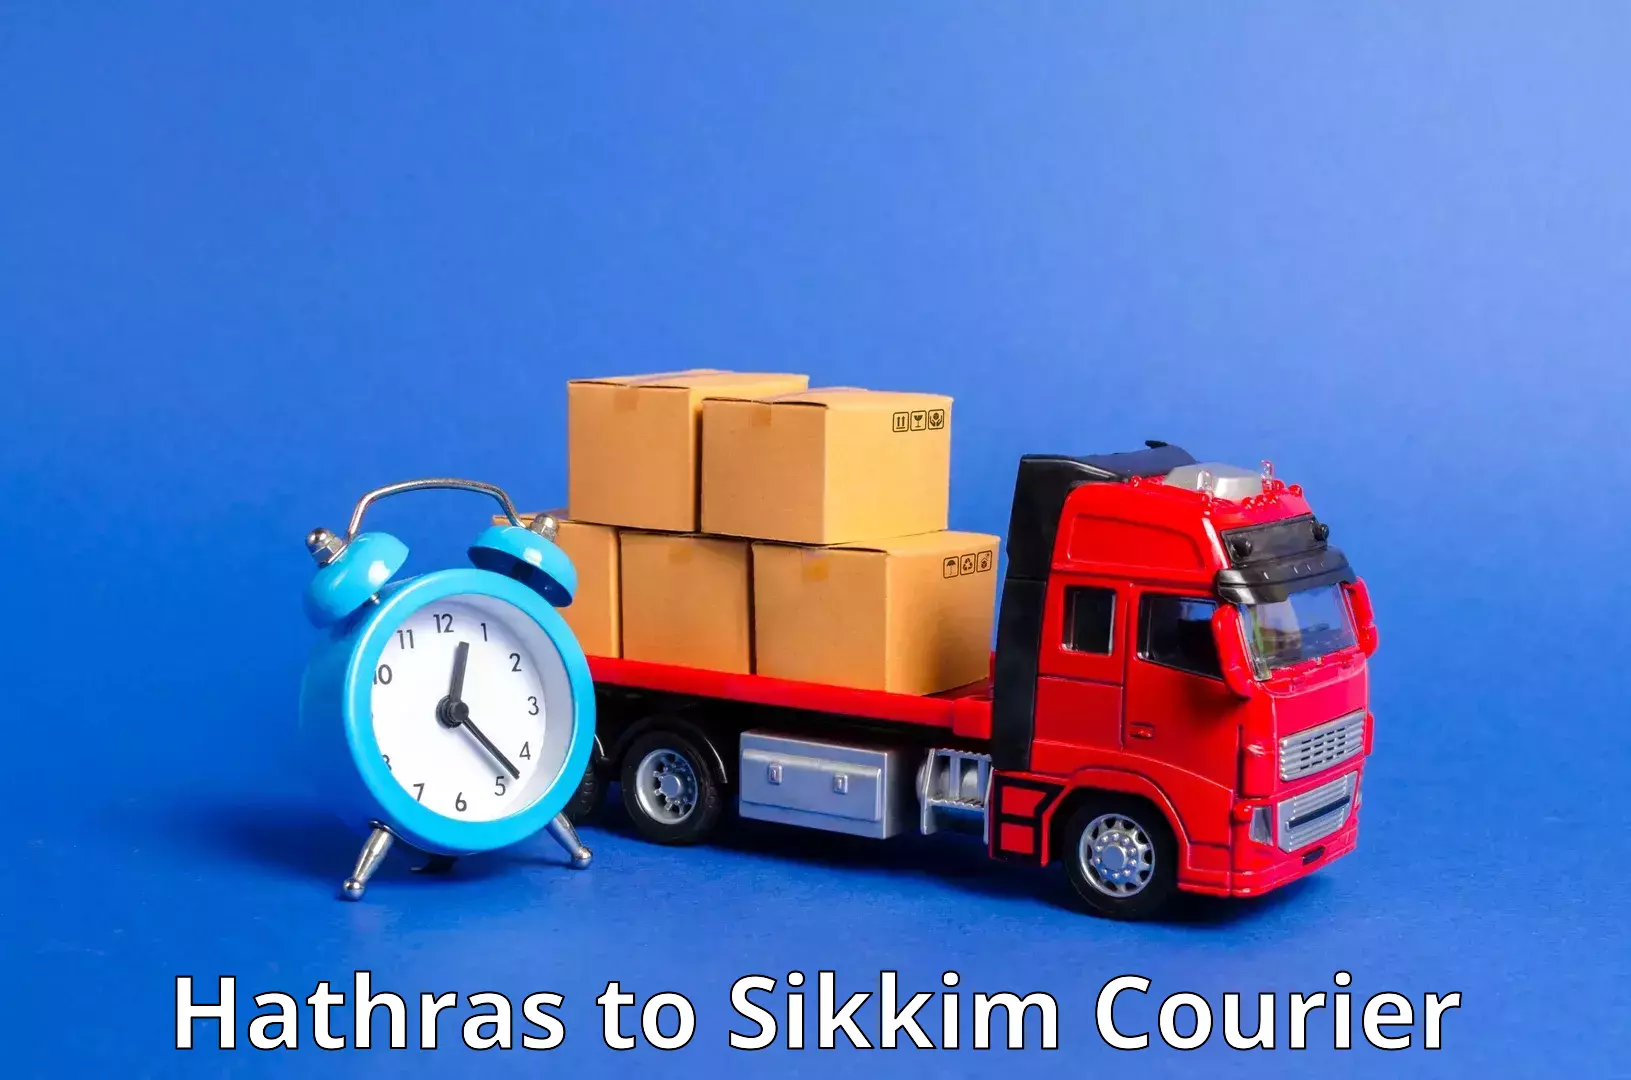 Seamless shipping service Hathras to Gangtok